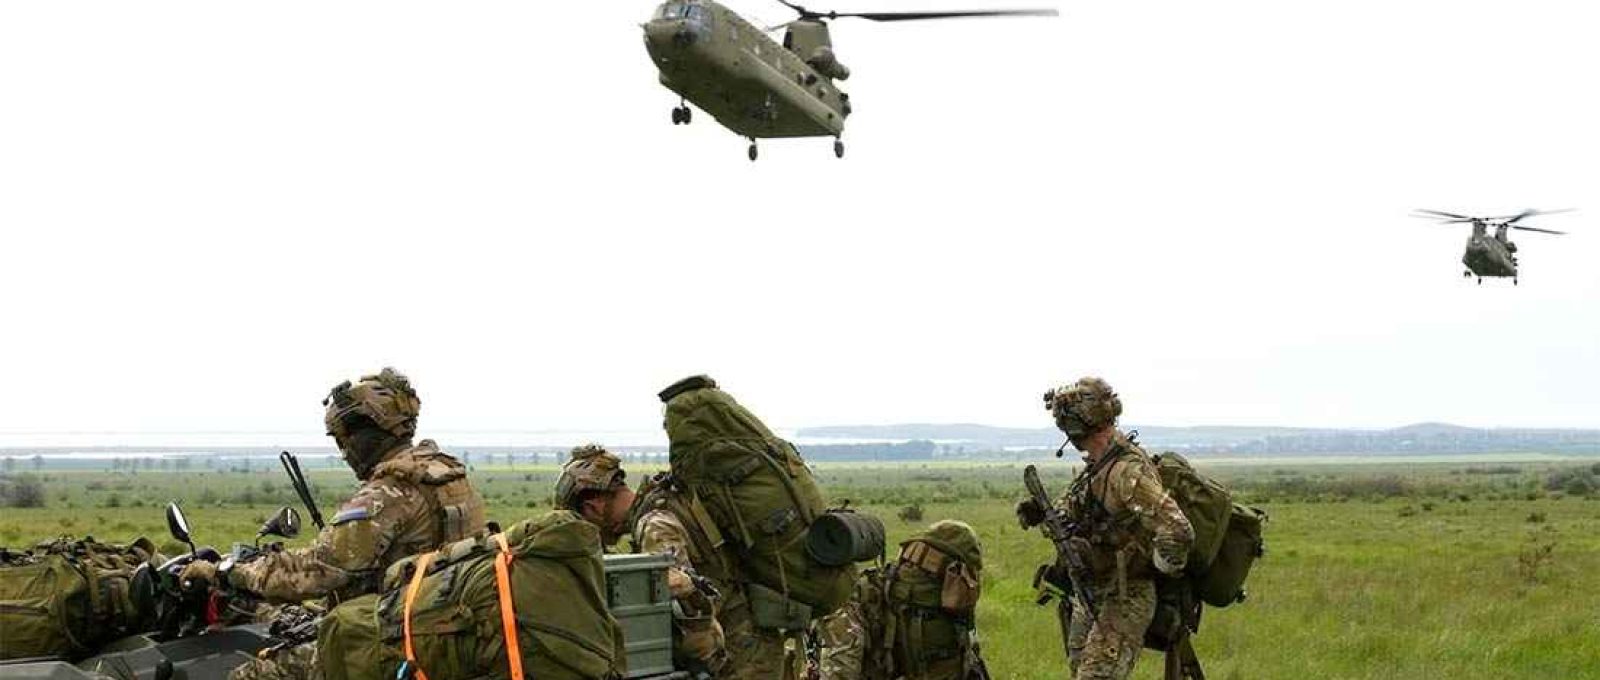 Soldados holandeses preparam equipamento enquanto helicópteros CH-47 Chinook voam para a área de coleta durante o exercício Swift Response 21 na área de treinamento de Babadag, Romênia, em 16 de maio de 2021 (Foto: Sgt. Randis Monroe/US Army).